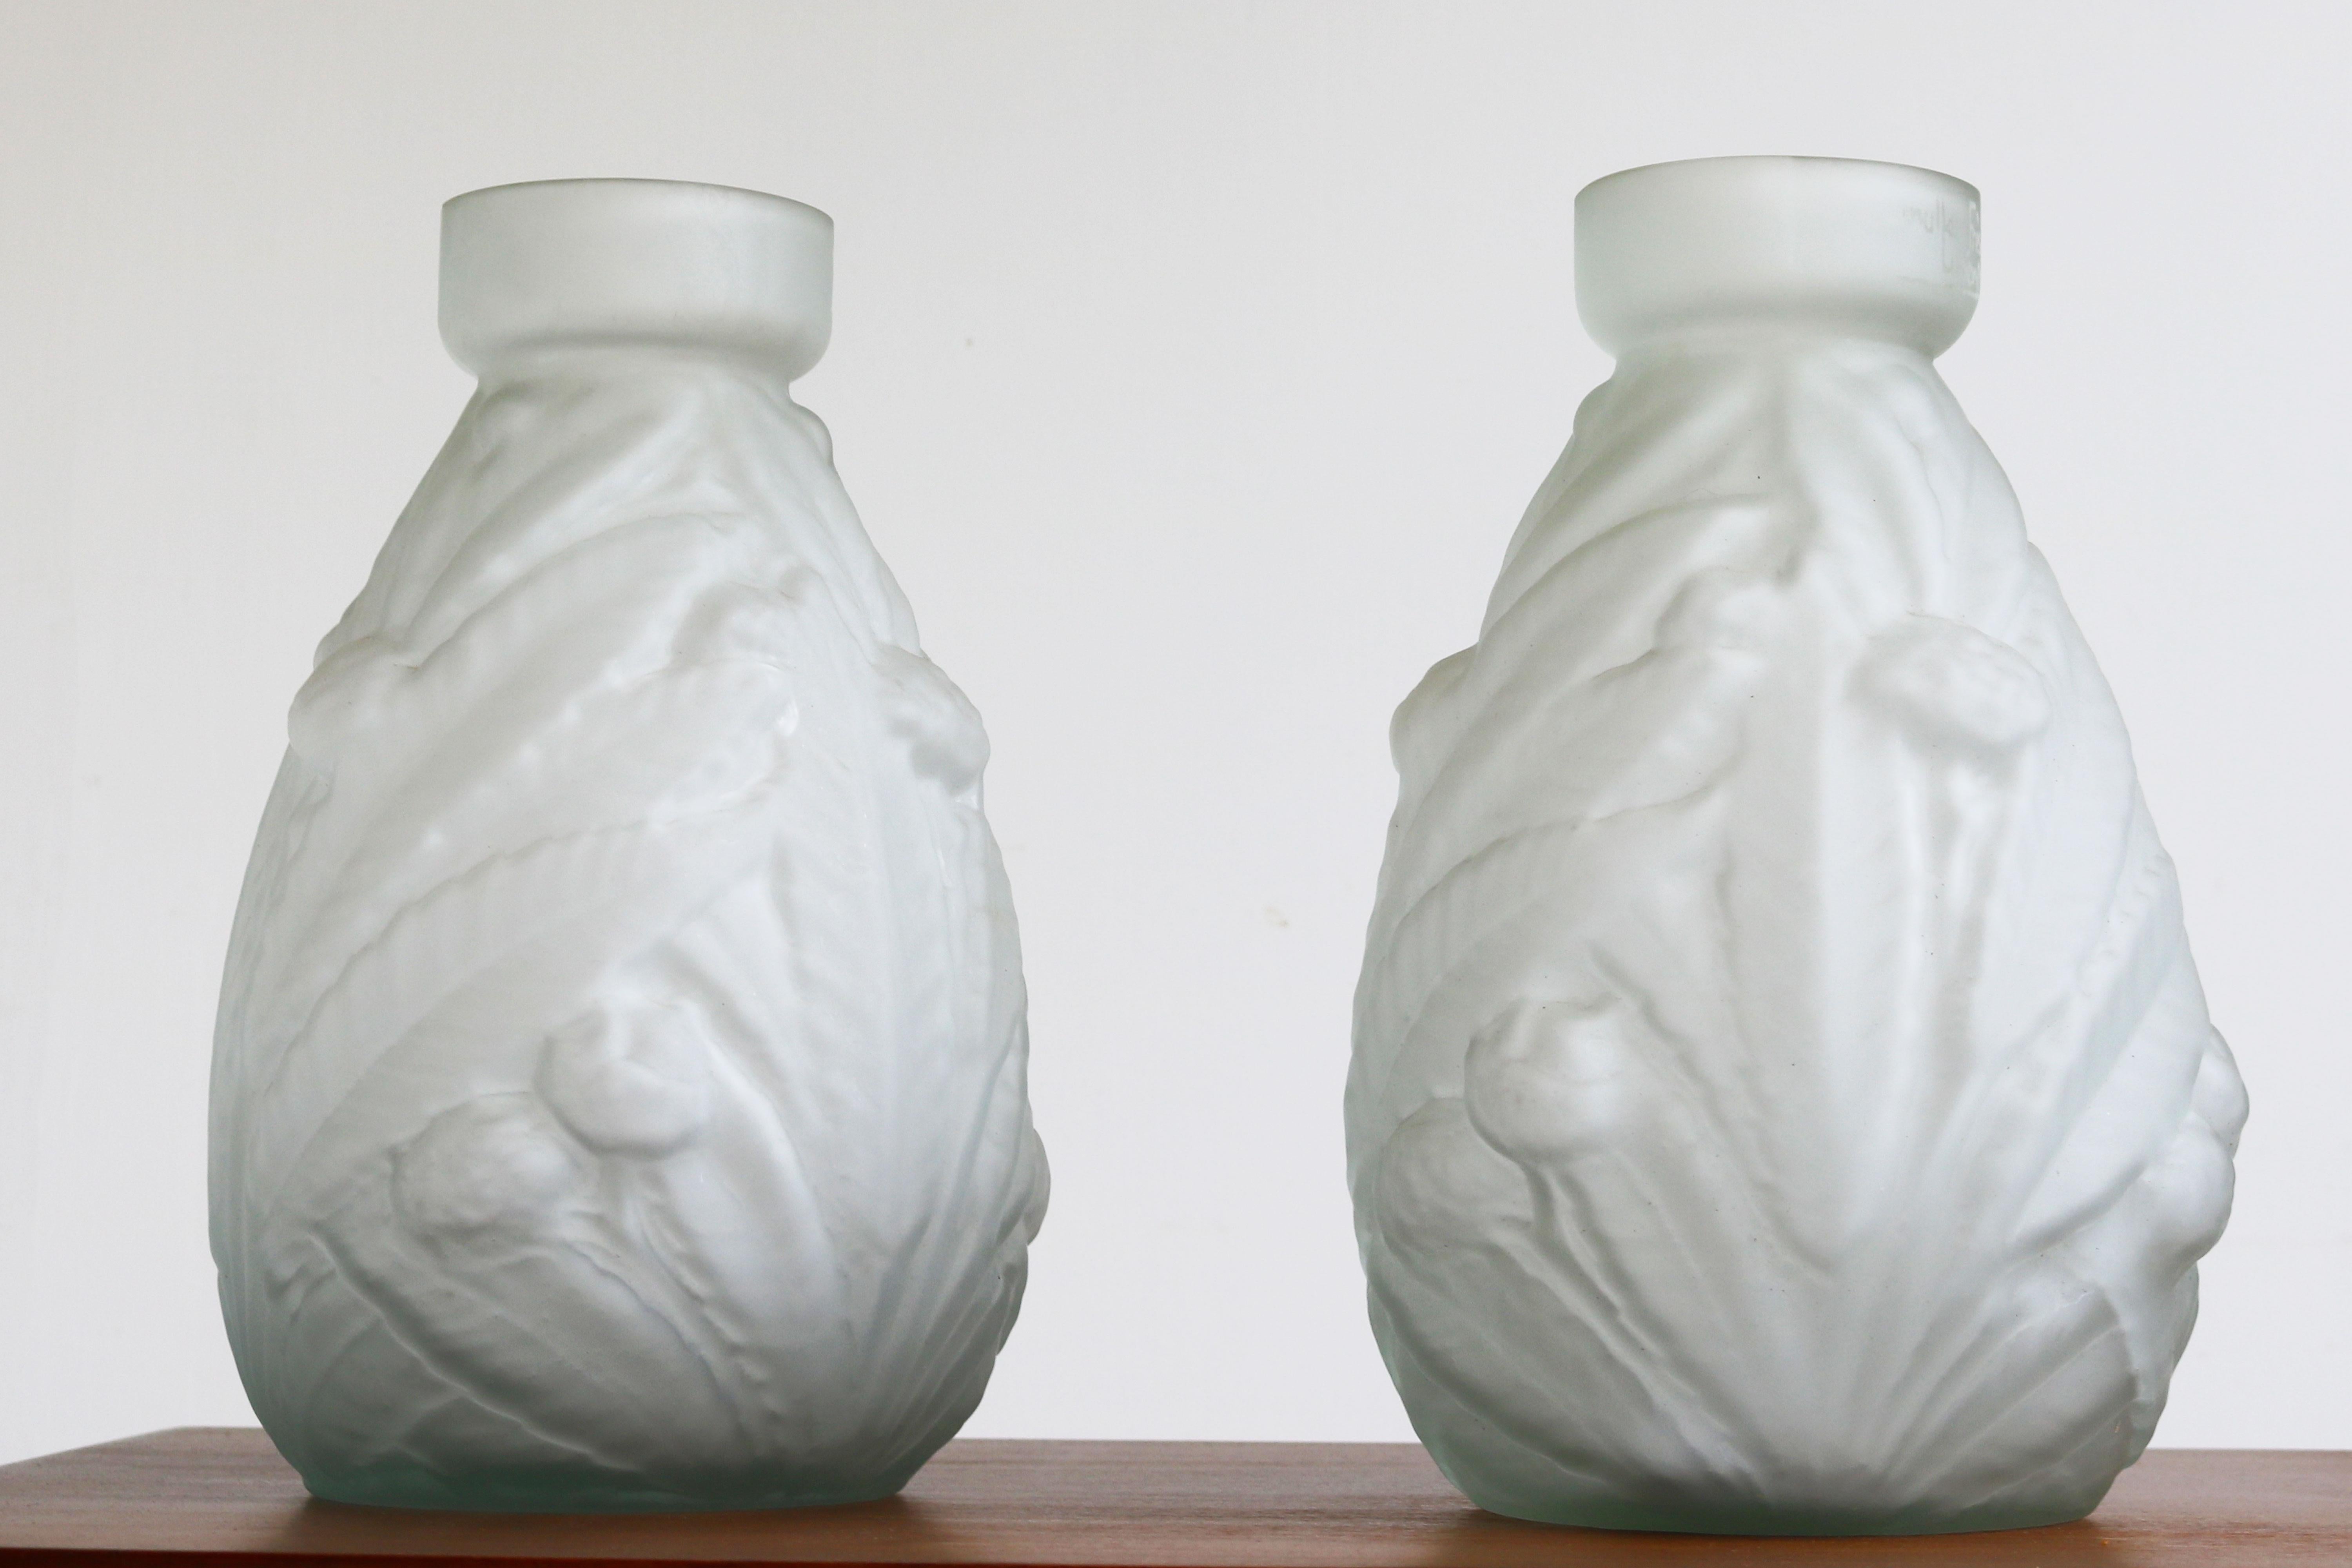 Magnifique paire de vases Art Nouveau de Muller Frères Luneville en verre dépoli 1900 France. 
Les vases sont en verre satiné (dépoli) et présentent d'étonnantes formes et motifs floraux caractéristiques de la période Art nouveau.
Les deux vases